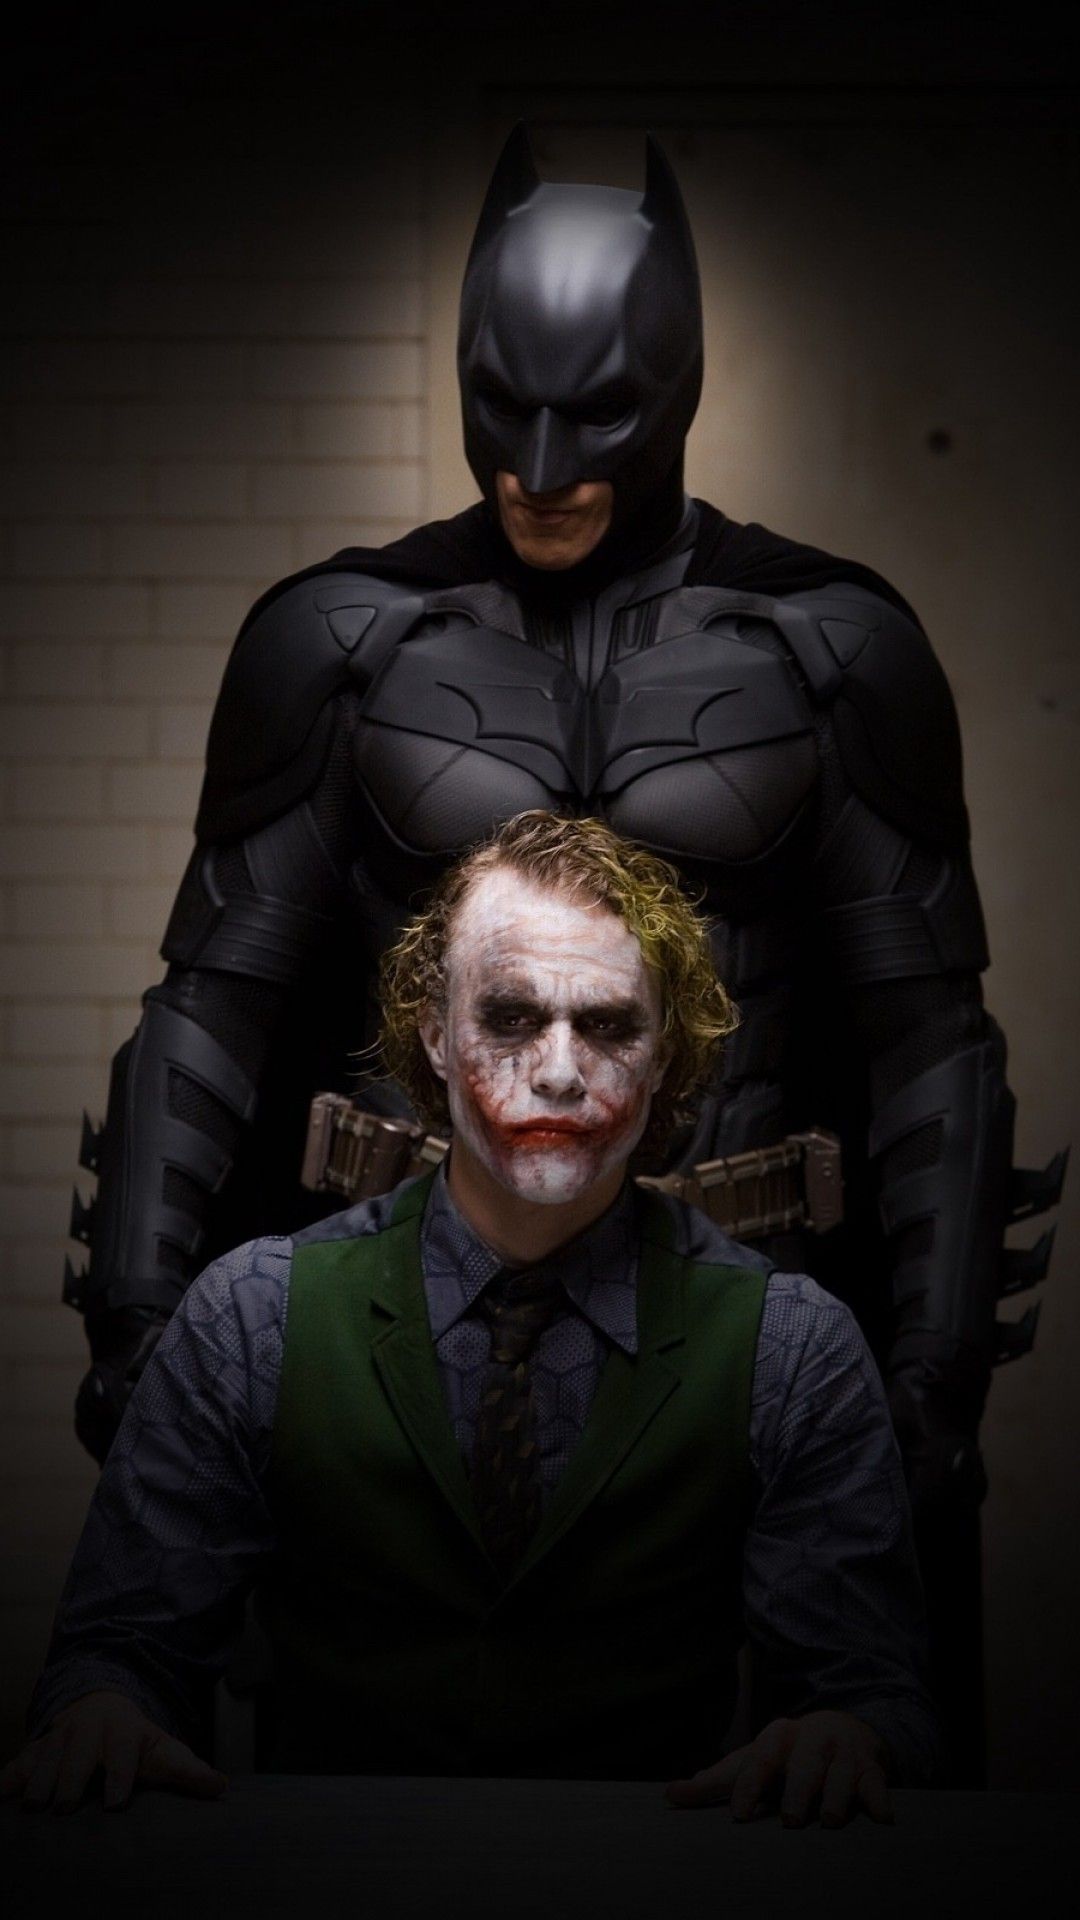 Joker And Batman HD Wallpaper For iPhone Wallpaper Joker